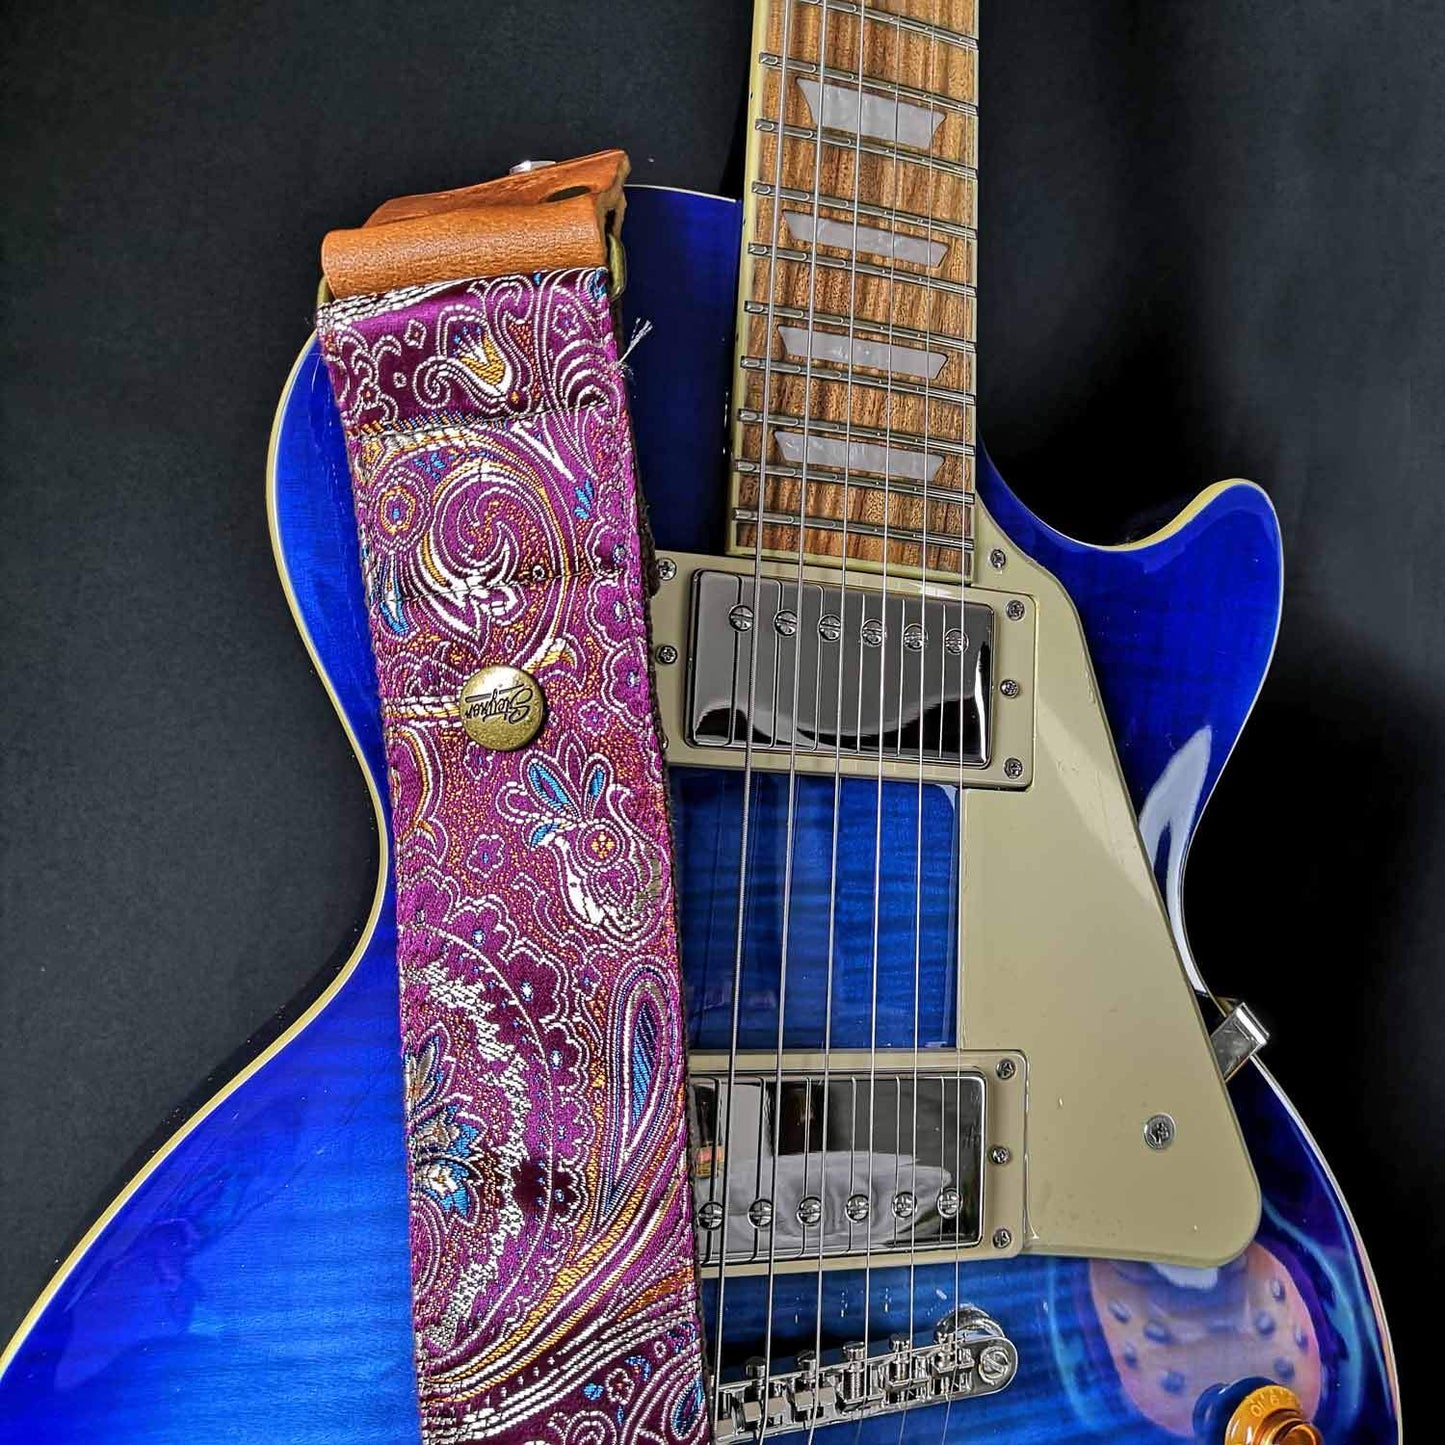 Gitarrengurt Pink mit seiden Glanz auf blauer les paul Gitarre